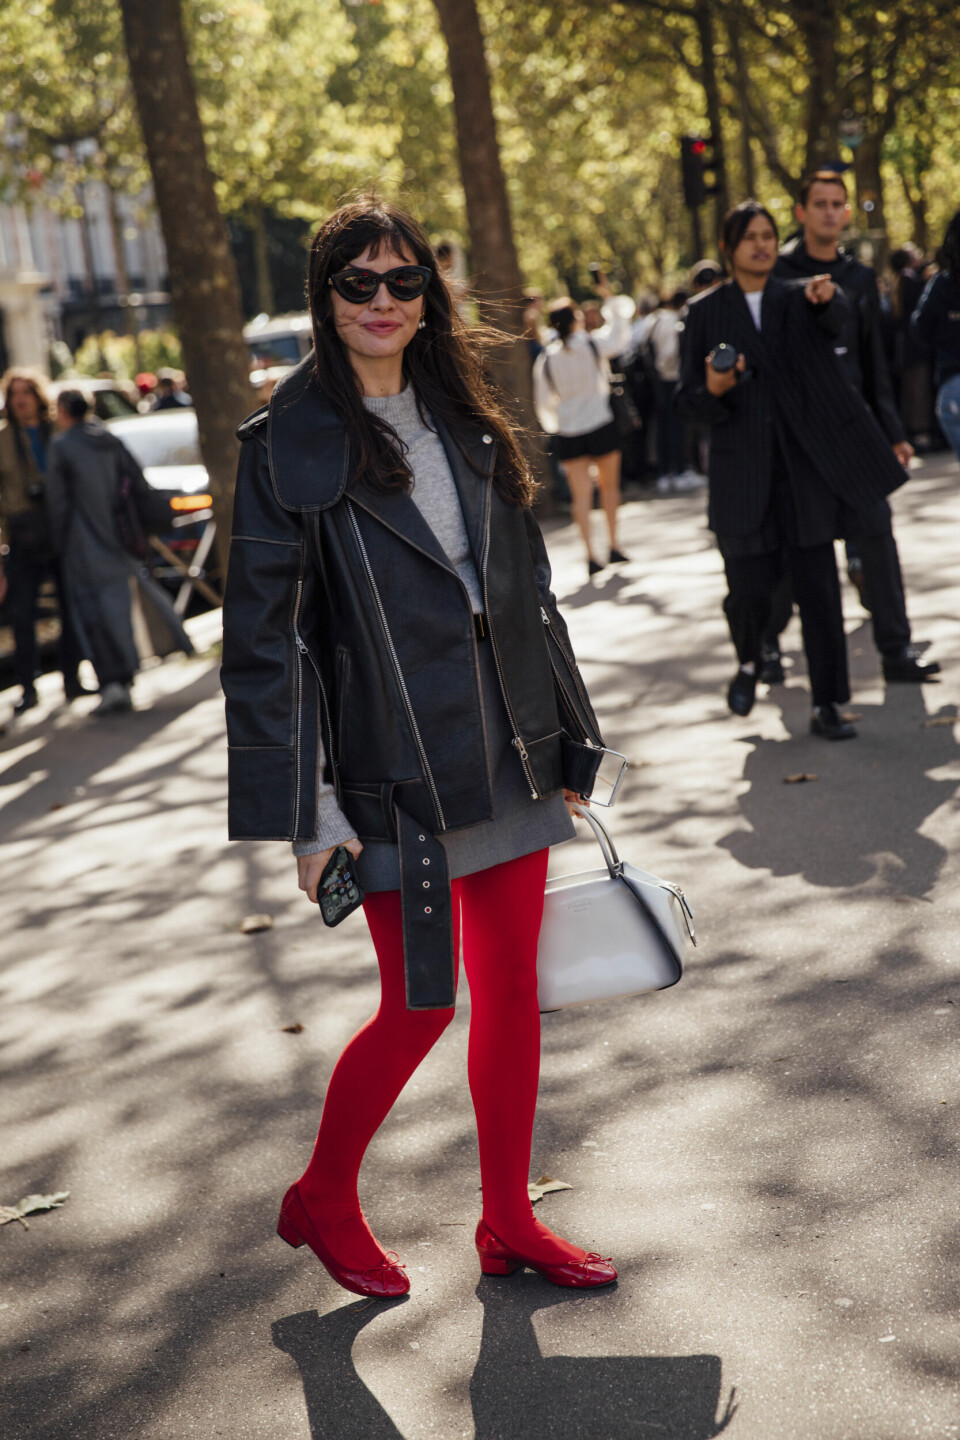 Gi høstlooken en trendy vri ved å style en klassisk look med et par røde strømper og matchende sko til – så fresht!